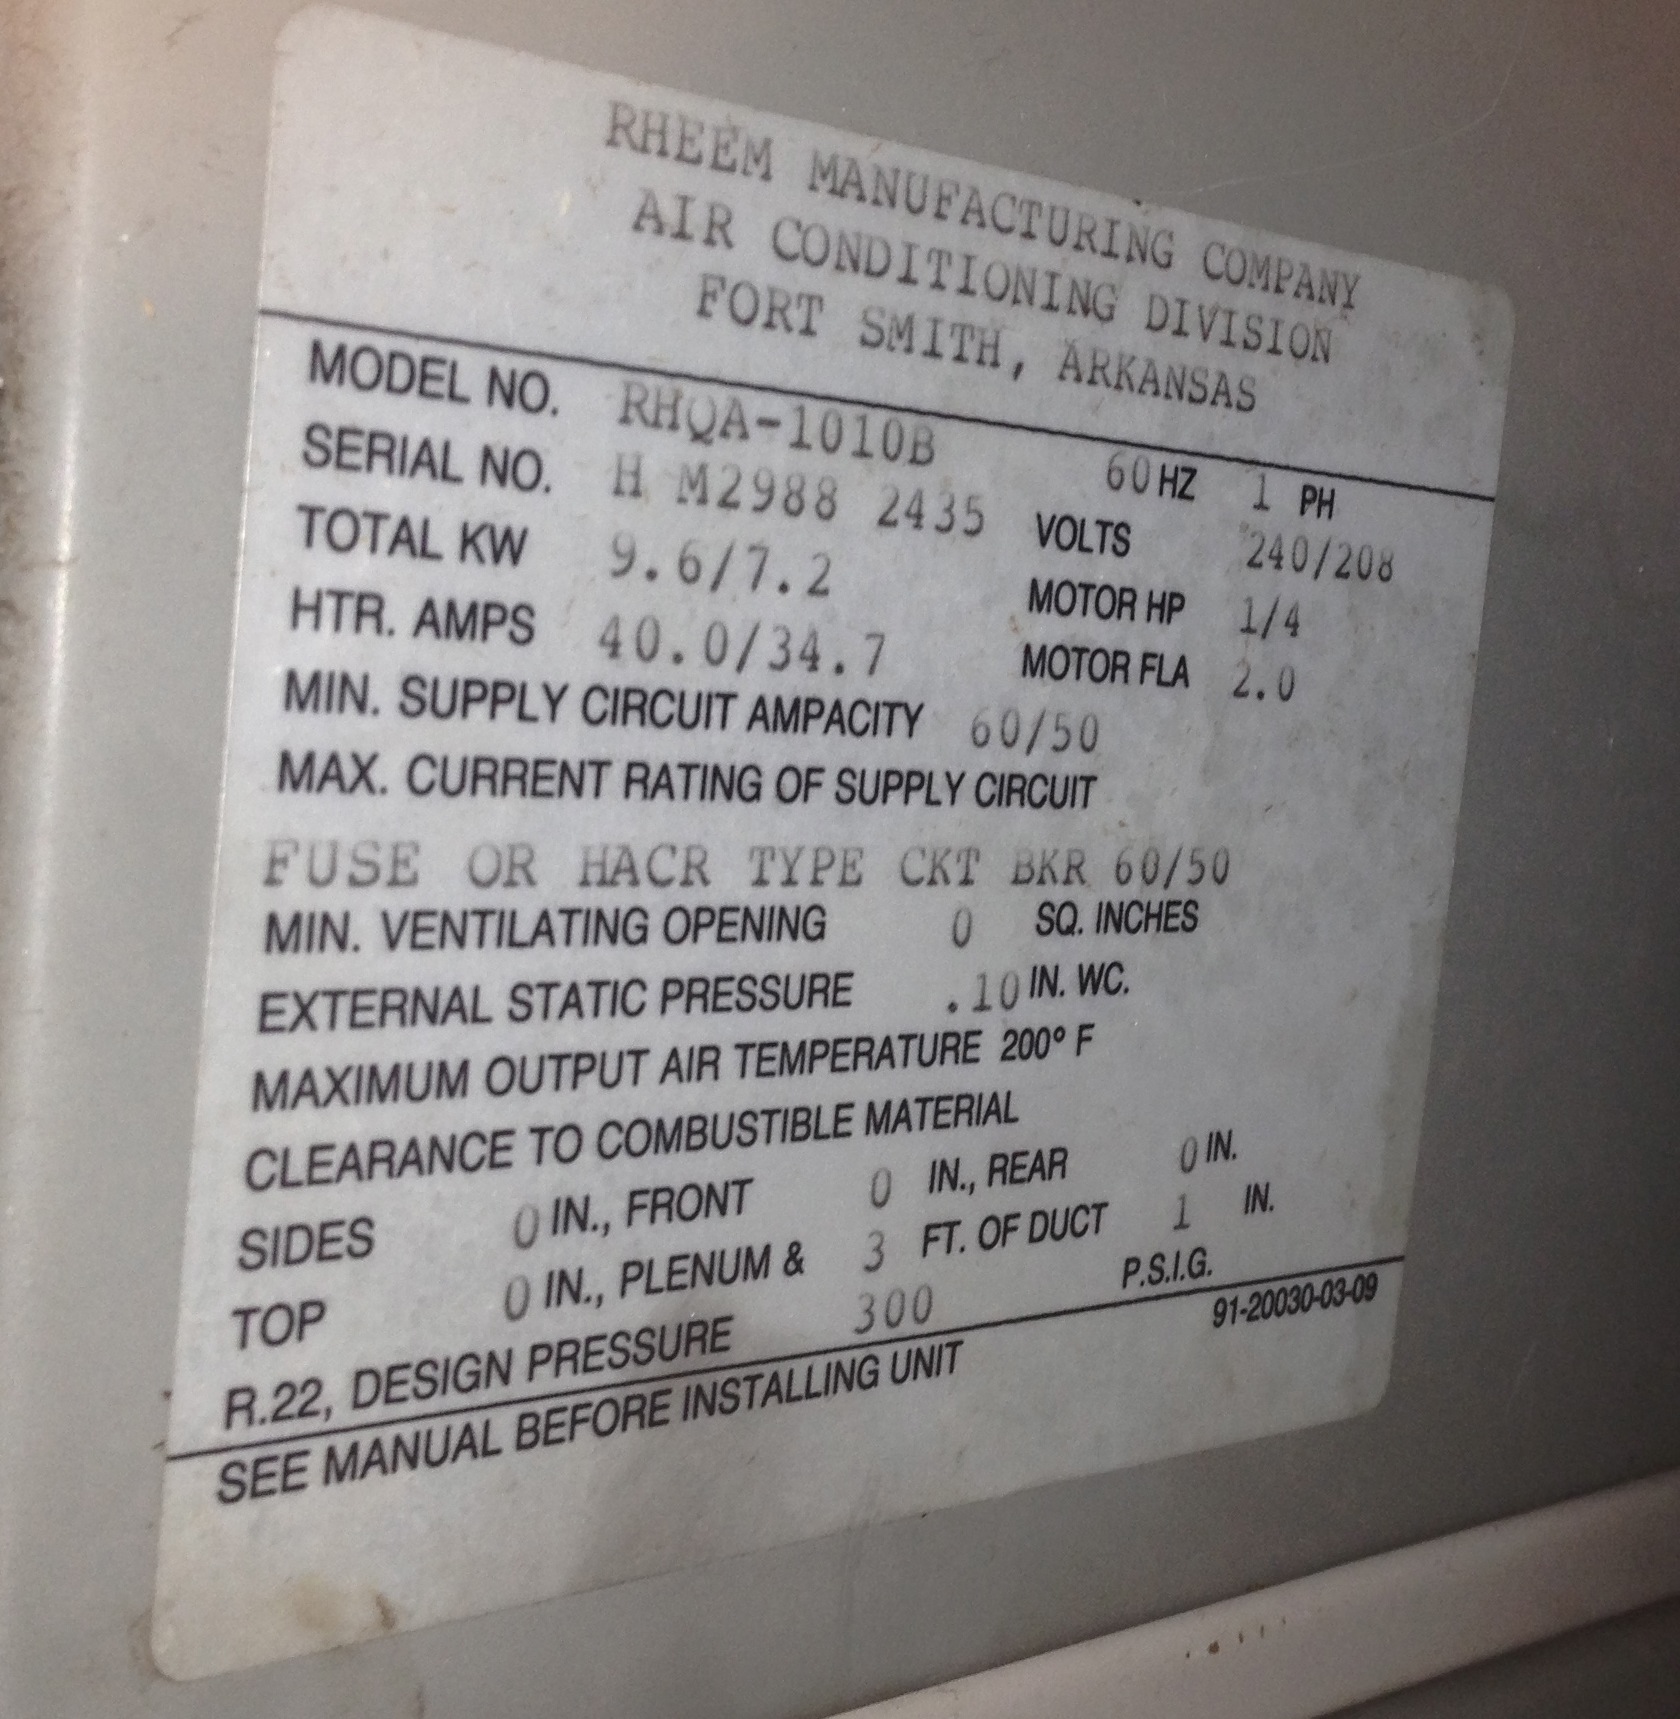 Rbi boiler serial number nomenclature